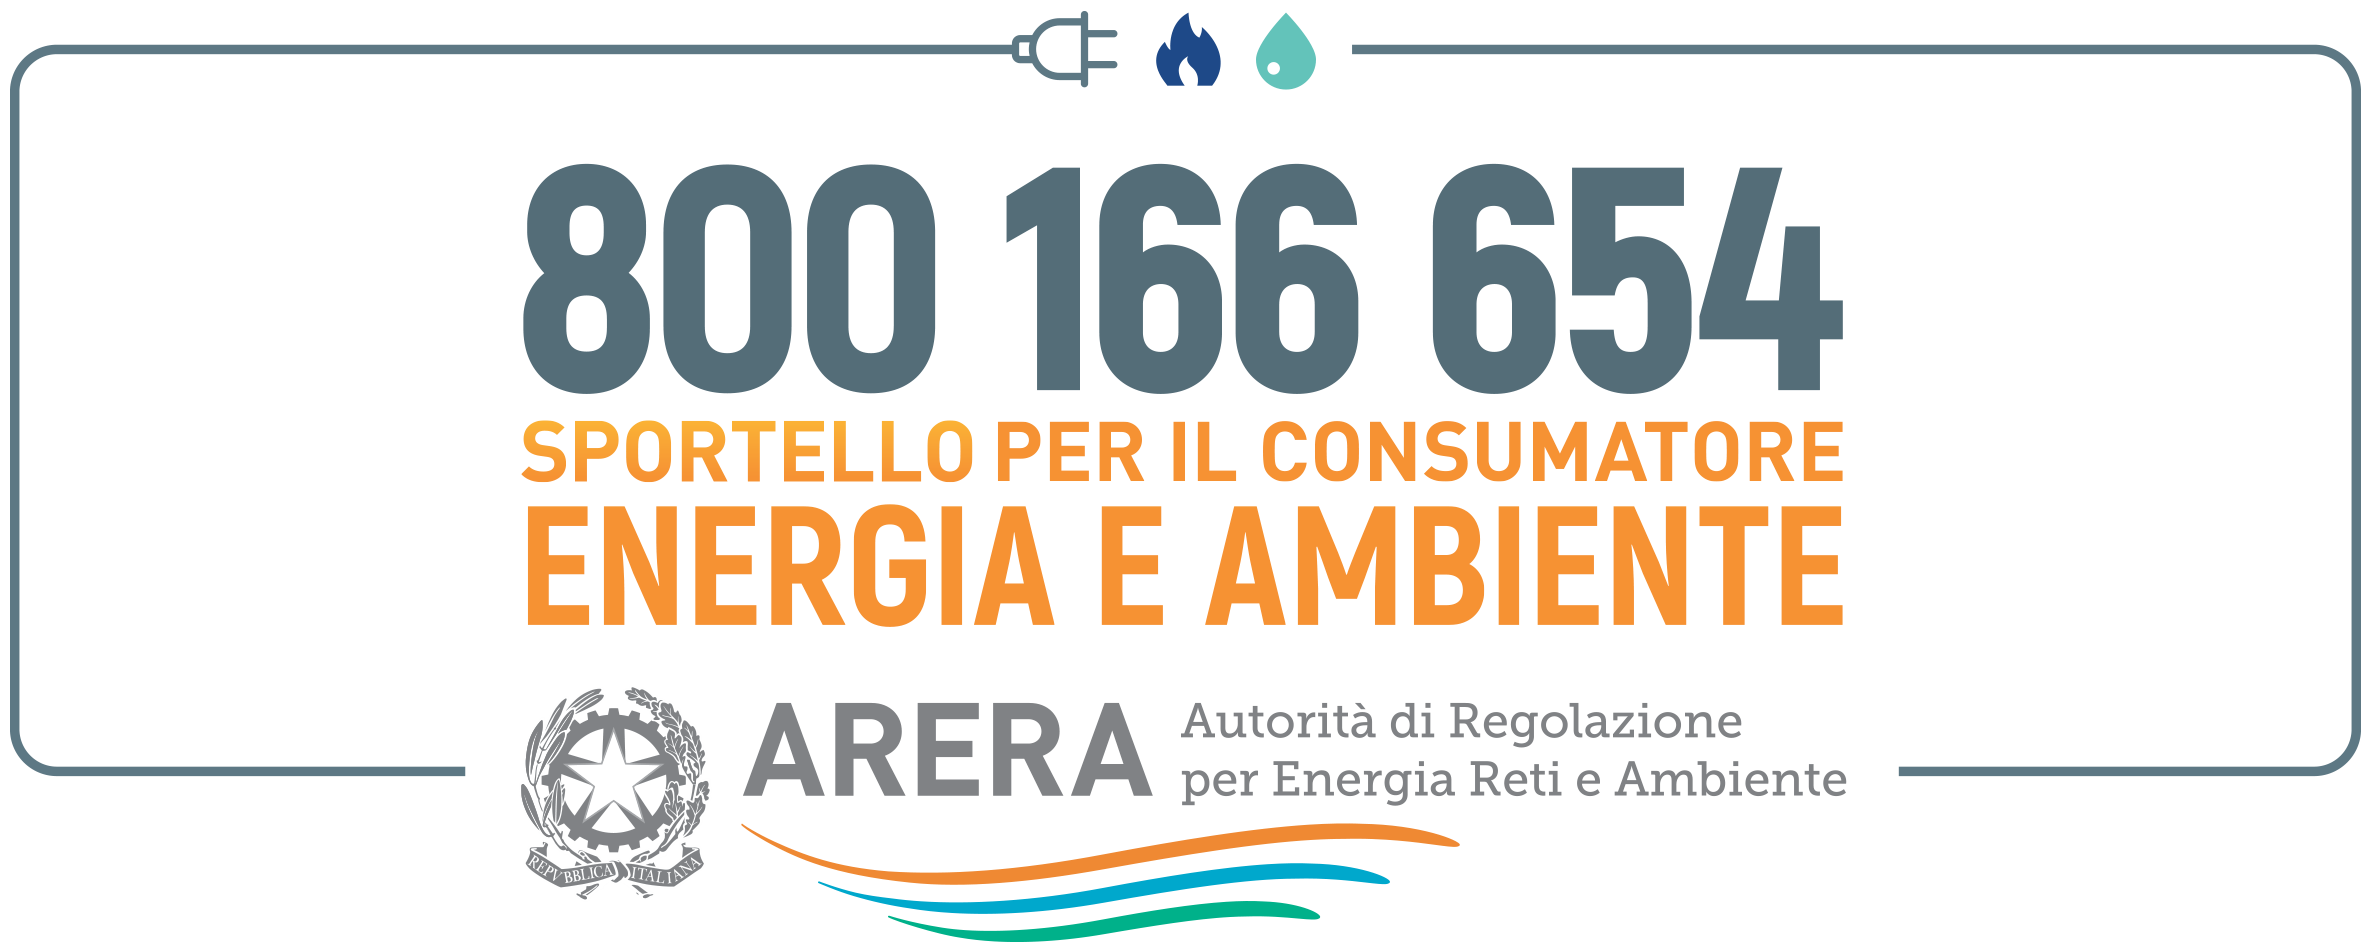 800 166 654 - Sportello per il consumatore - Energia e ambiente